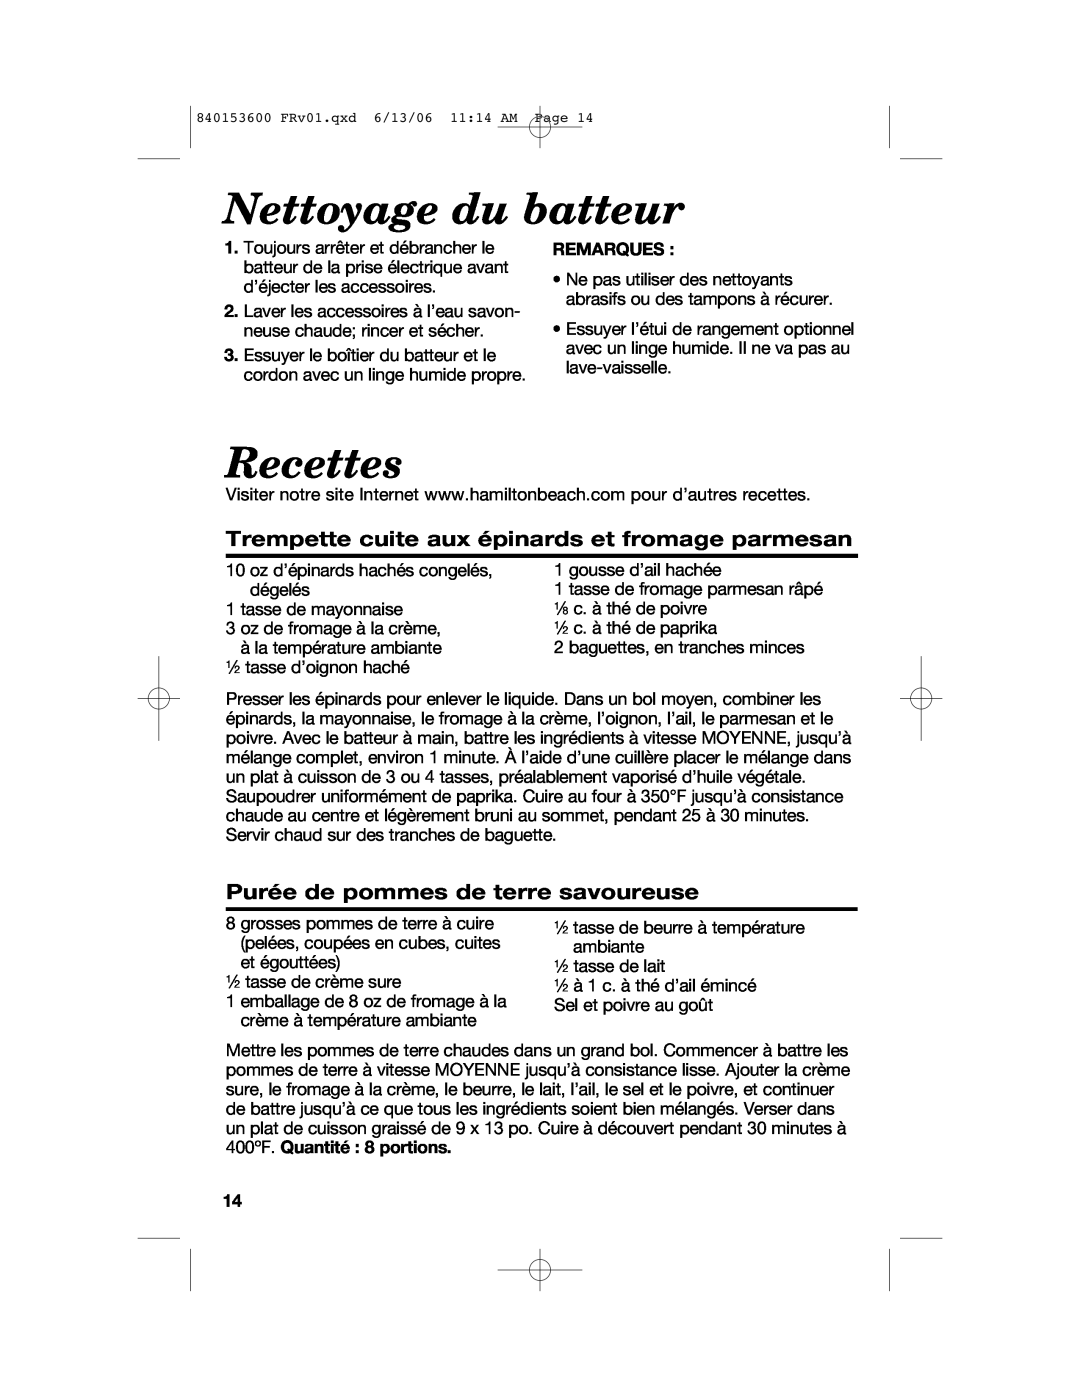 Hamilton Beach 62660 manual Nettoyage du batteur, Recettes, Trempette cuite aux épinards et fromage parmesan, Remarques 